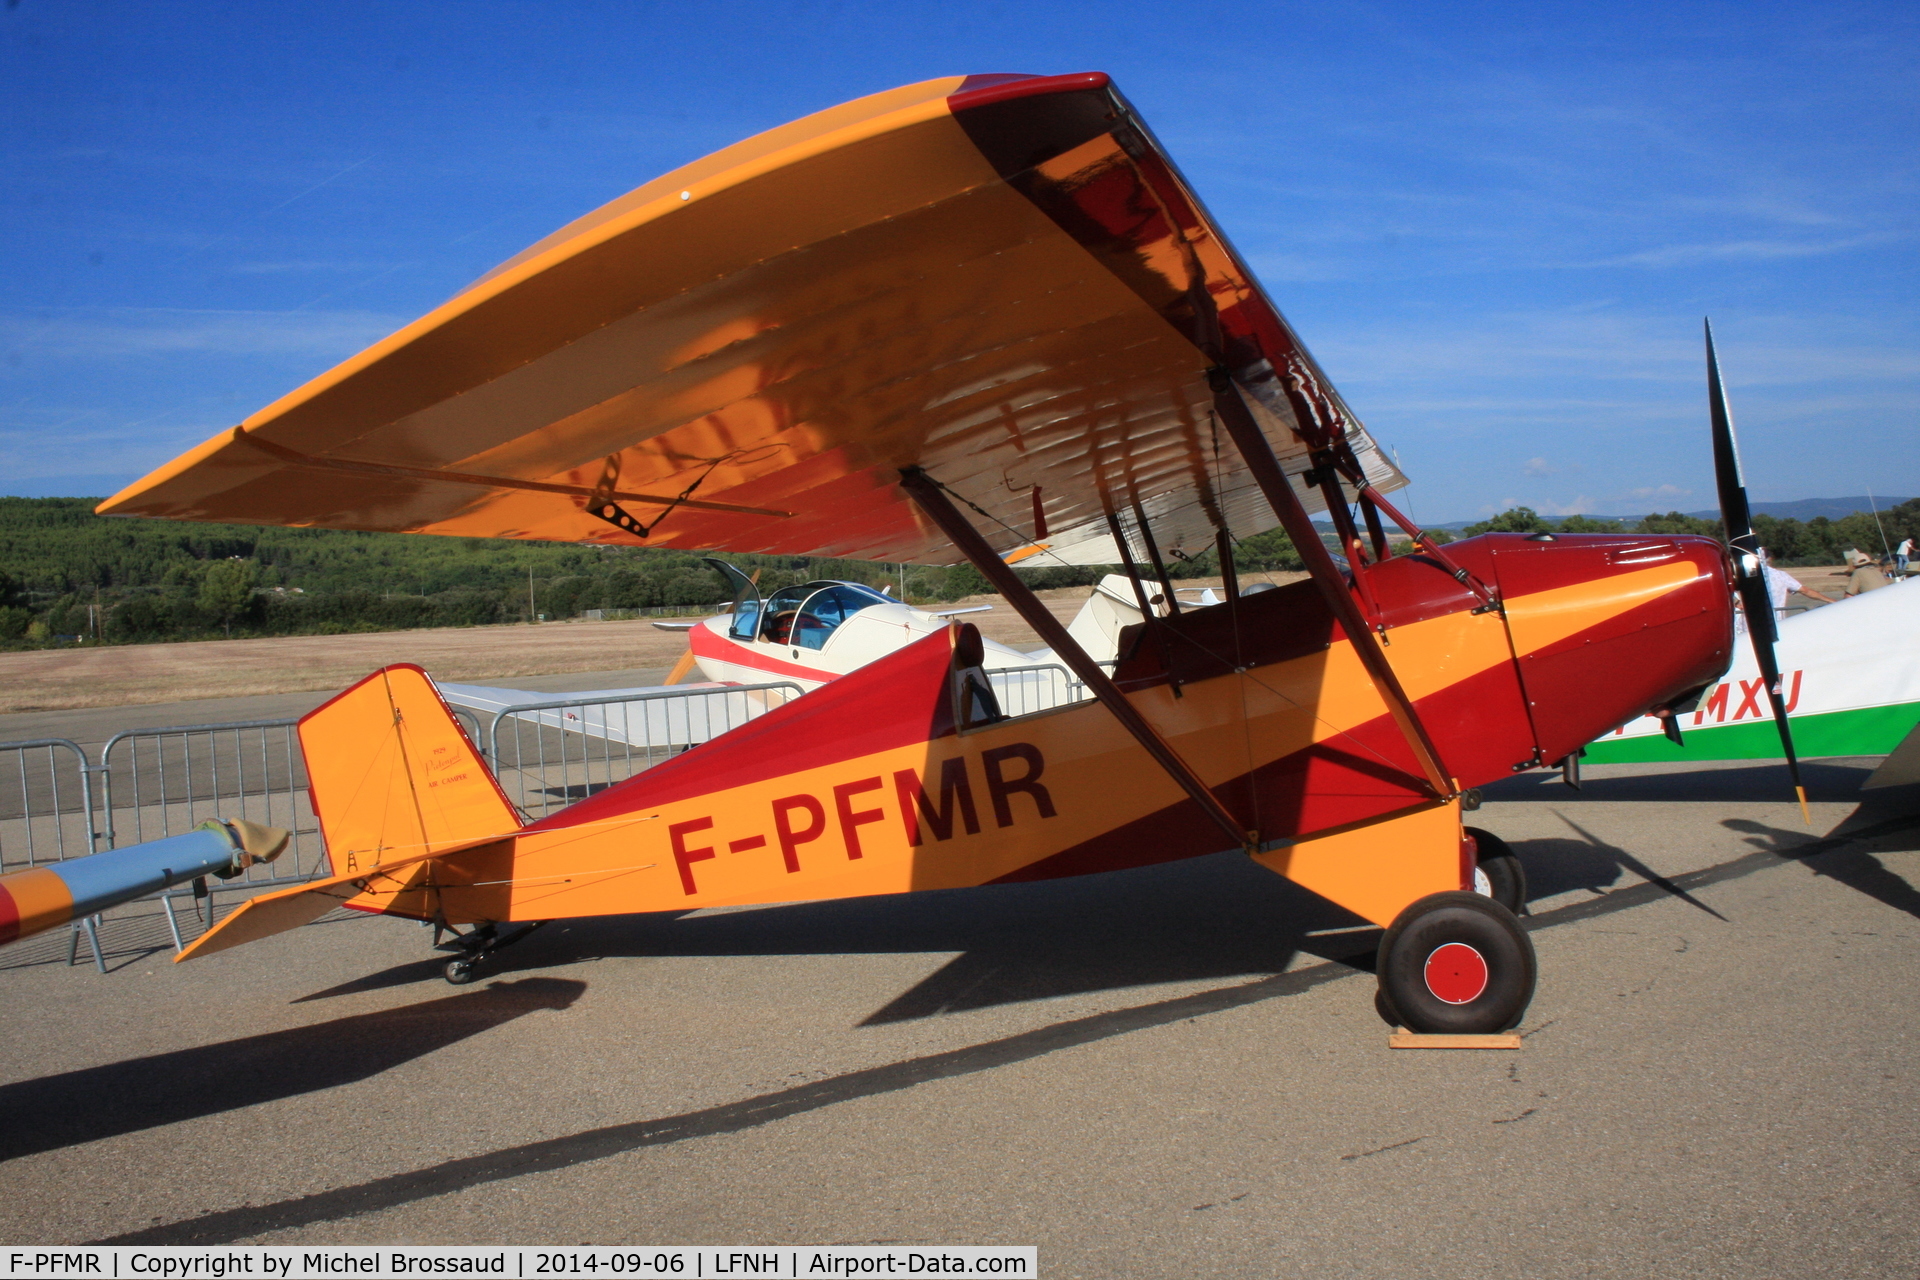 F-PFMR, Pietenpol Air Camper C/N 0041, Seen at Carpentras (LFNH) for RSA airshow 2014